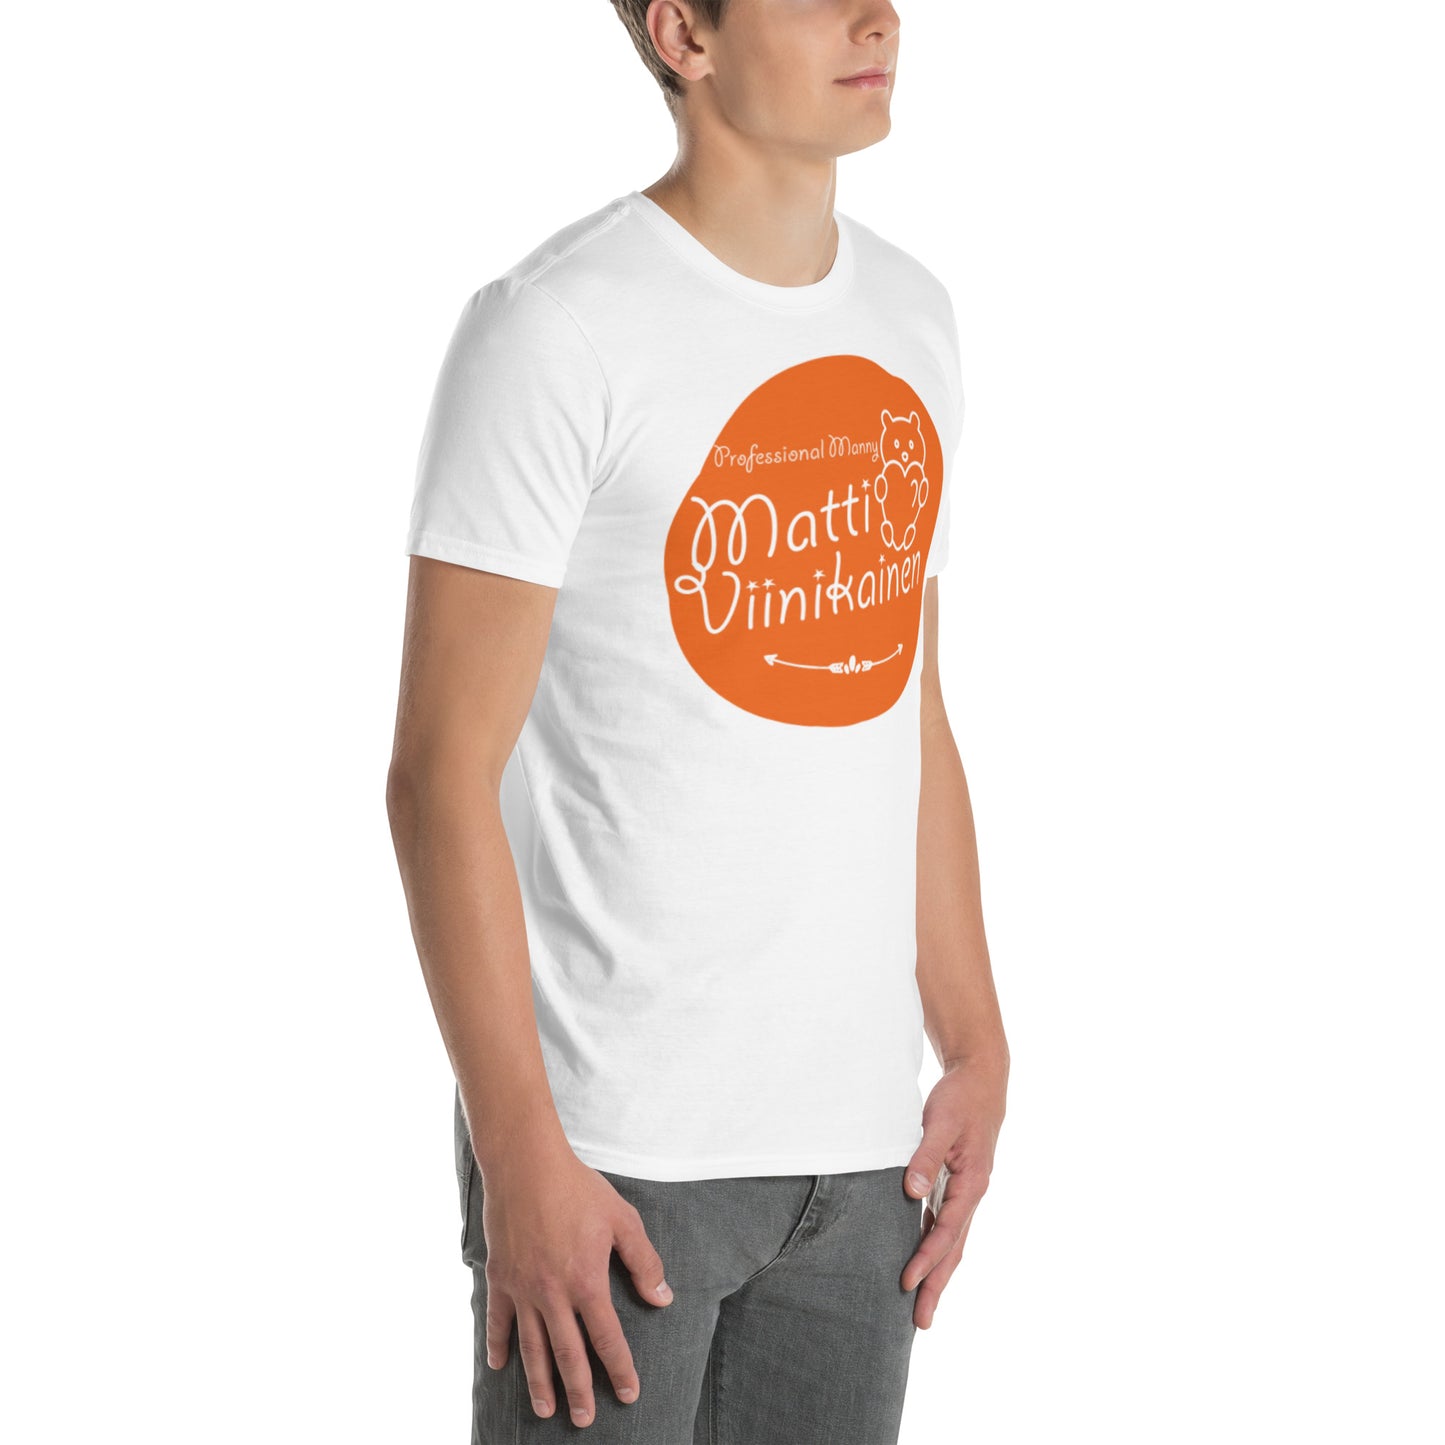 Unisex-T-Shirt „Matti Viinikainen“.